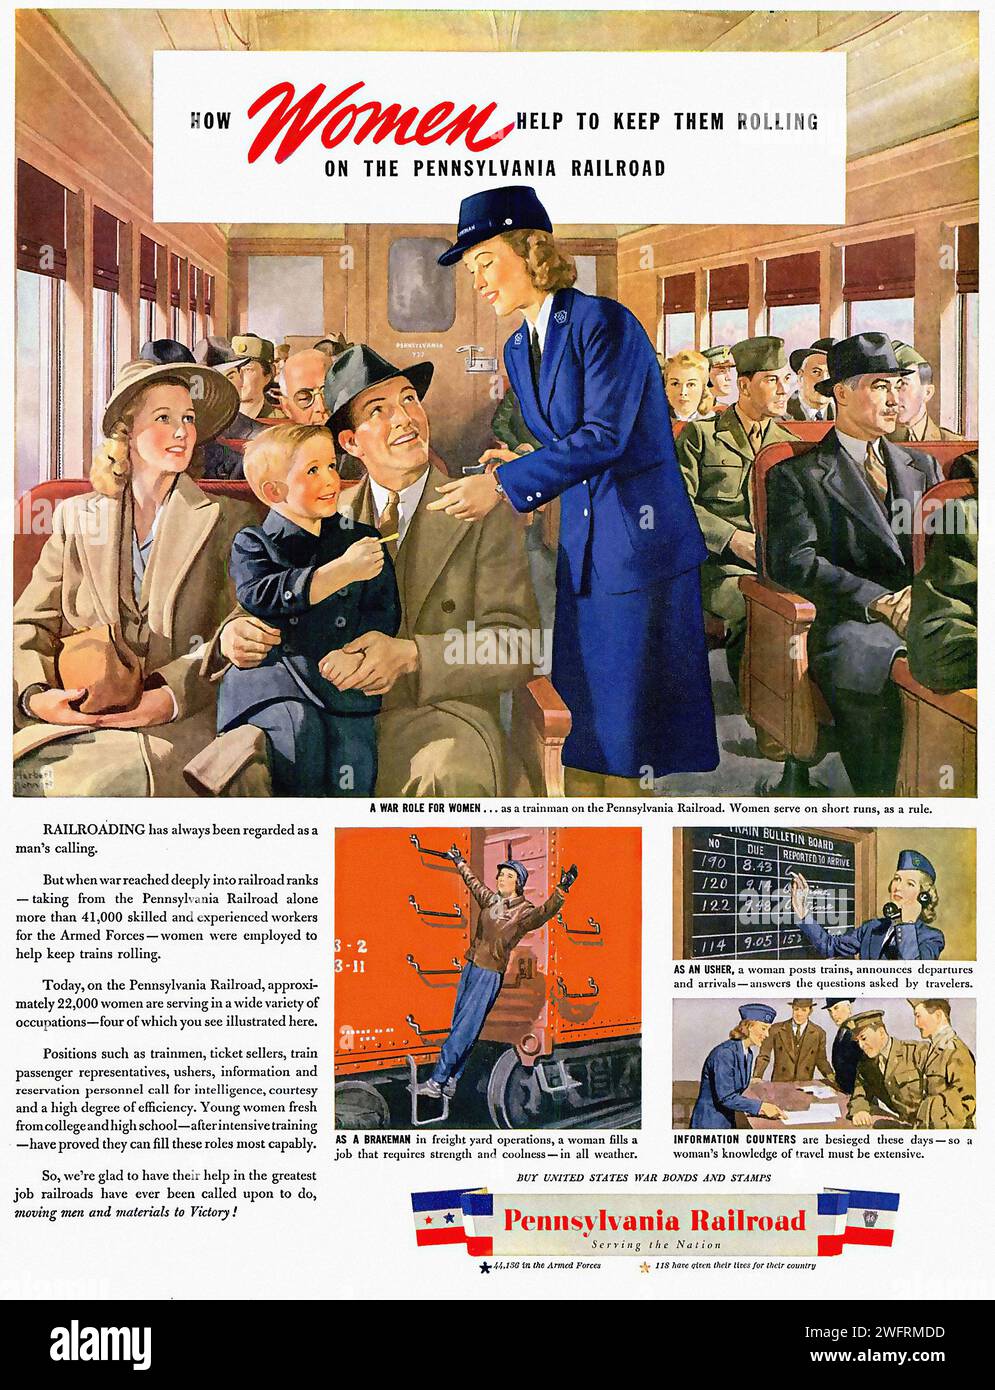 "COME LE DONNE AIUTANO A MANTENERLE IN MOVIMENTO" questa è una pubblicità vintage dell'era della seconda guerra mondiale, originaria degli Stati Uniti. Presenta una donna con un vestito blu in piedi di fronte a un gruppo di uomini in un vagone ferroviario. La pubblicità è per la Pennsylvania Railroad, e il testo sottolinea il ruolo delle donne nell'industria ferroviaria, con il titolo "How Women Help to Keep Them Rolling". Lo stile grafico dell'immagine è tipico dell'arte commerciale della metà del XX secolo, con linee audaci e una composizione drammatica. Lo sfondo della pubblicità è un vagone ferroviario con finestre e pannelli di legno Foto Stock